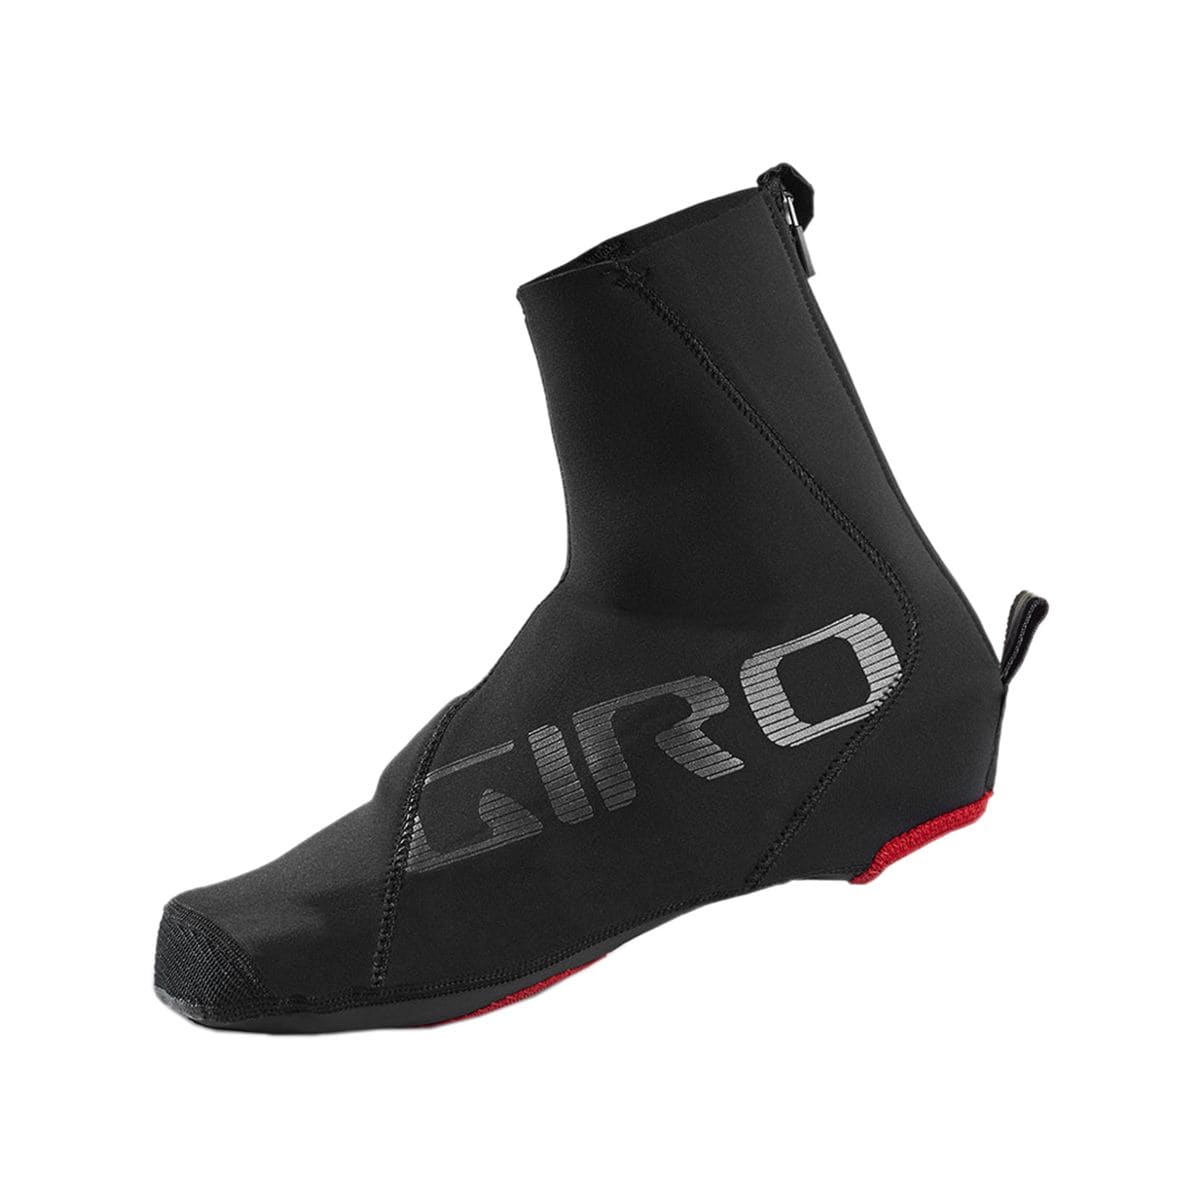 Giro Proof Winter Shoe Covers